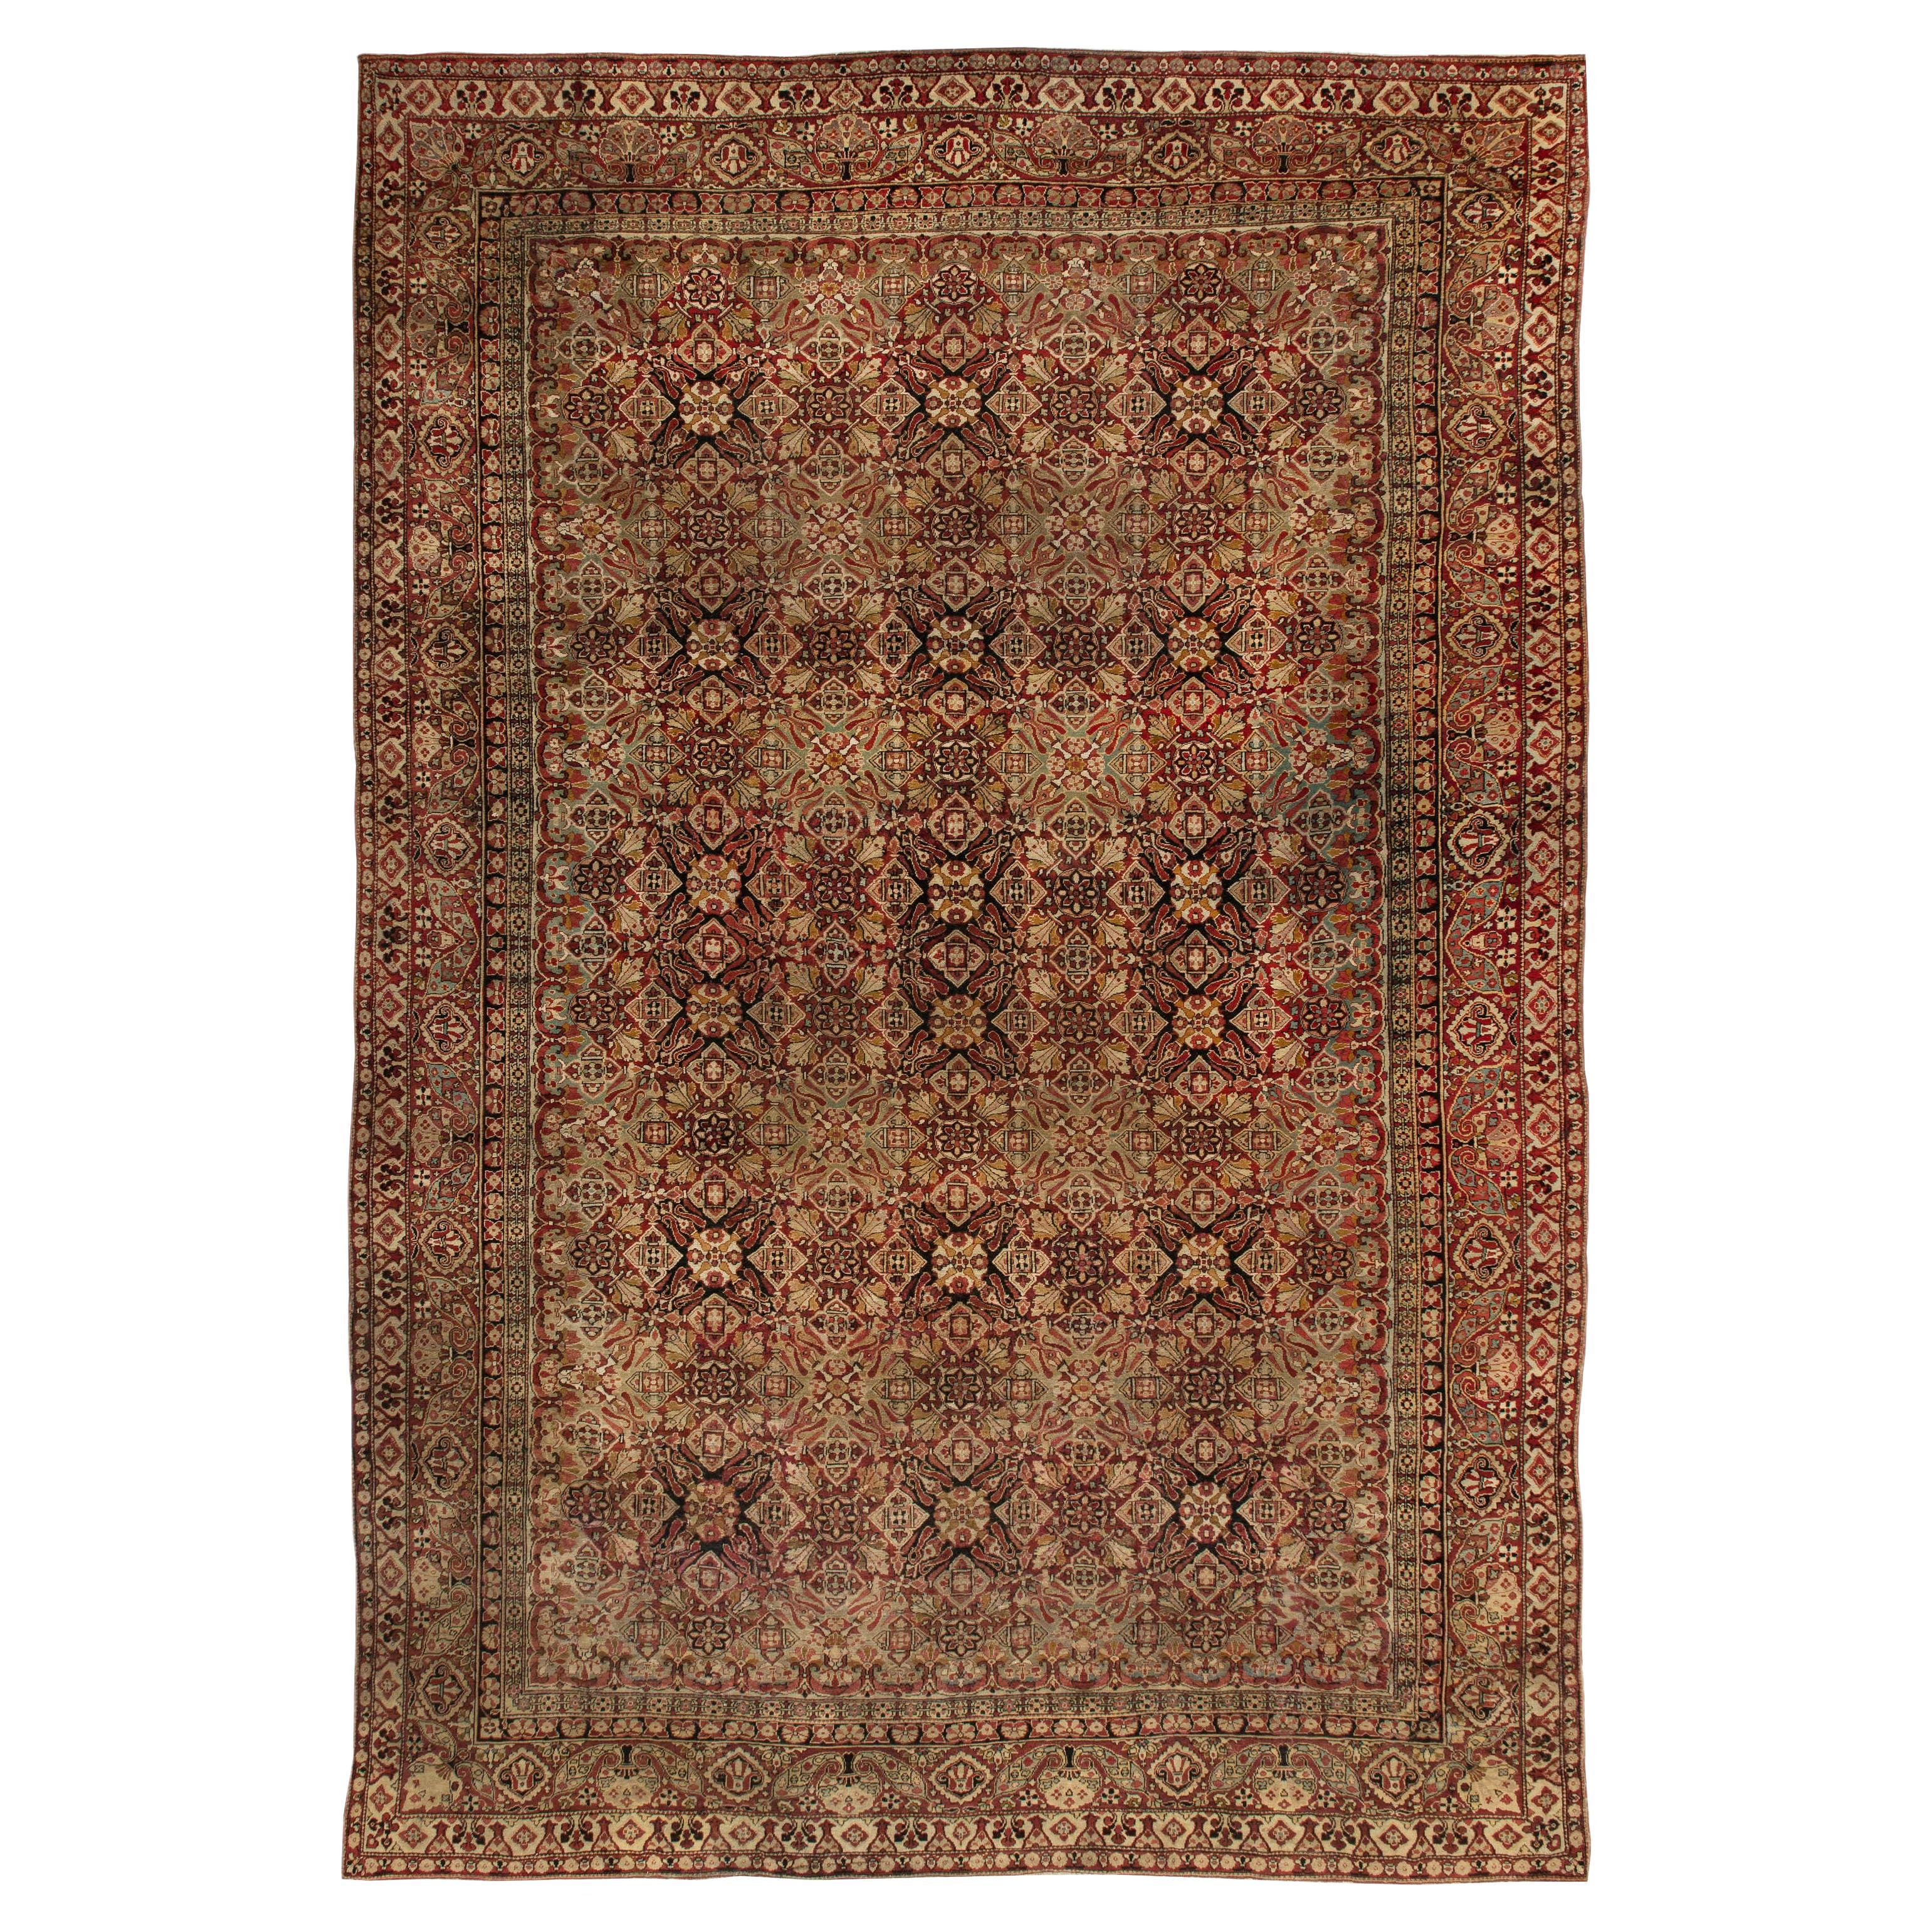 19th Century Indian Amritsar Botanic Wool Carpet For Sale